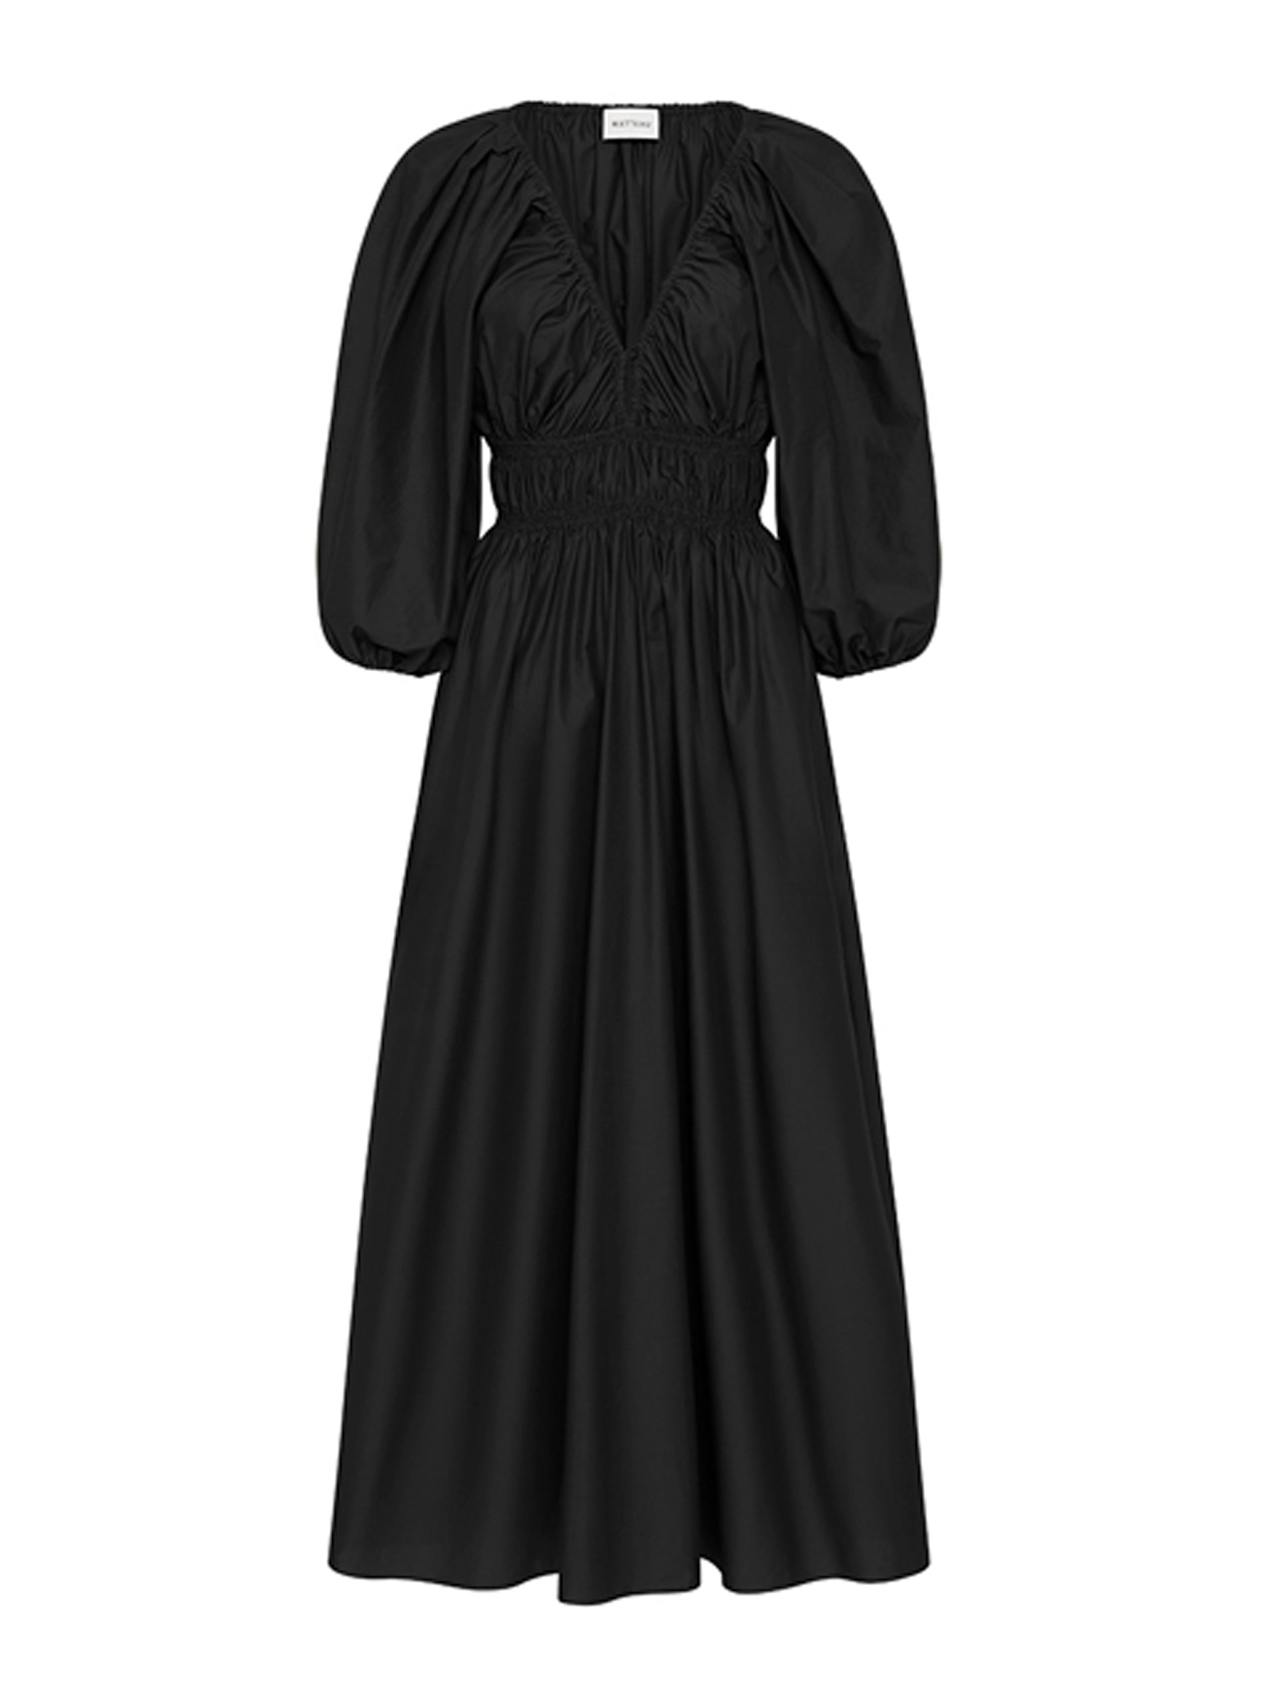 Black shirred plunge button dress